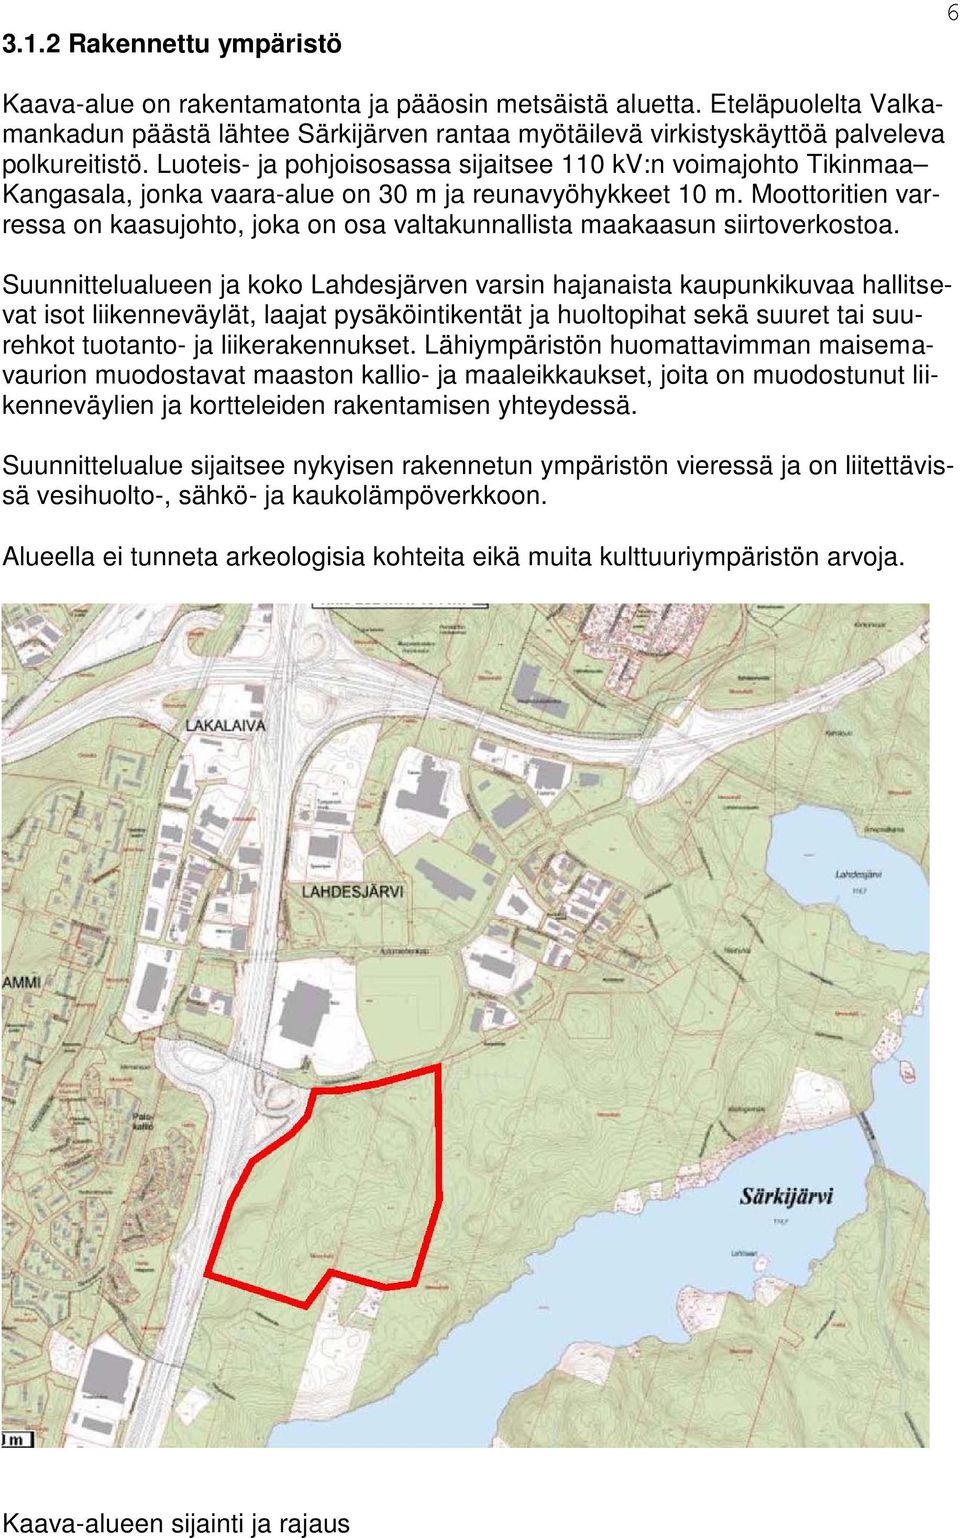 Luoteis- ja pohjoisosassa sijaitsee 110 kv:n voimajohto Tikinmaa Kangasala, jonka vaara-alue on 30 m ja reunavyöhykkeet 10 m.